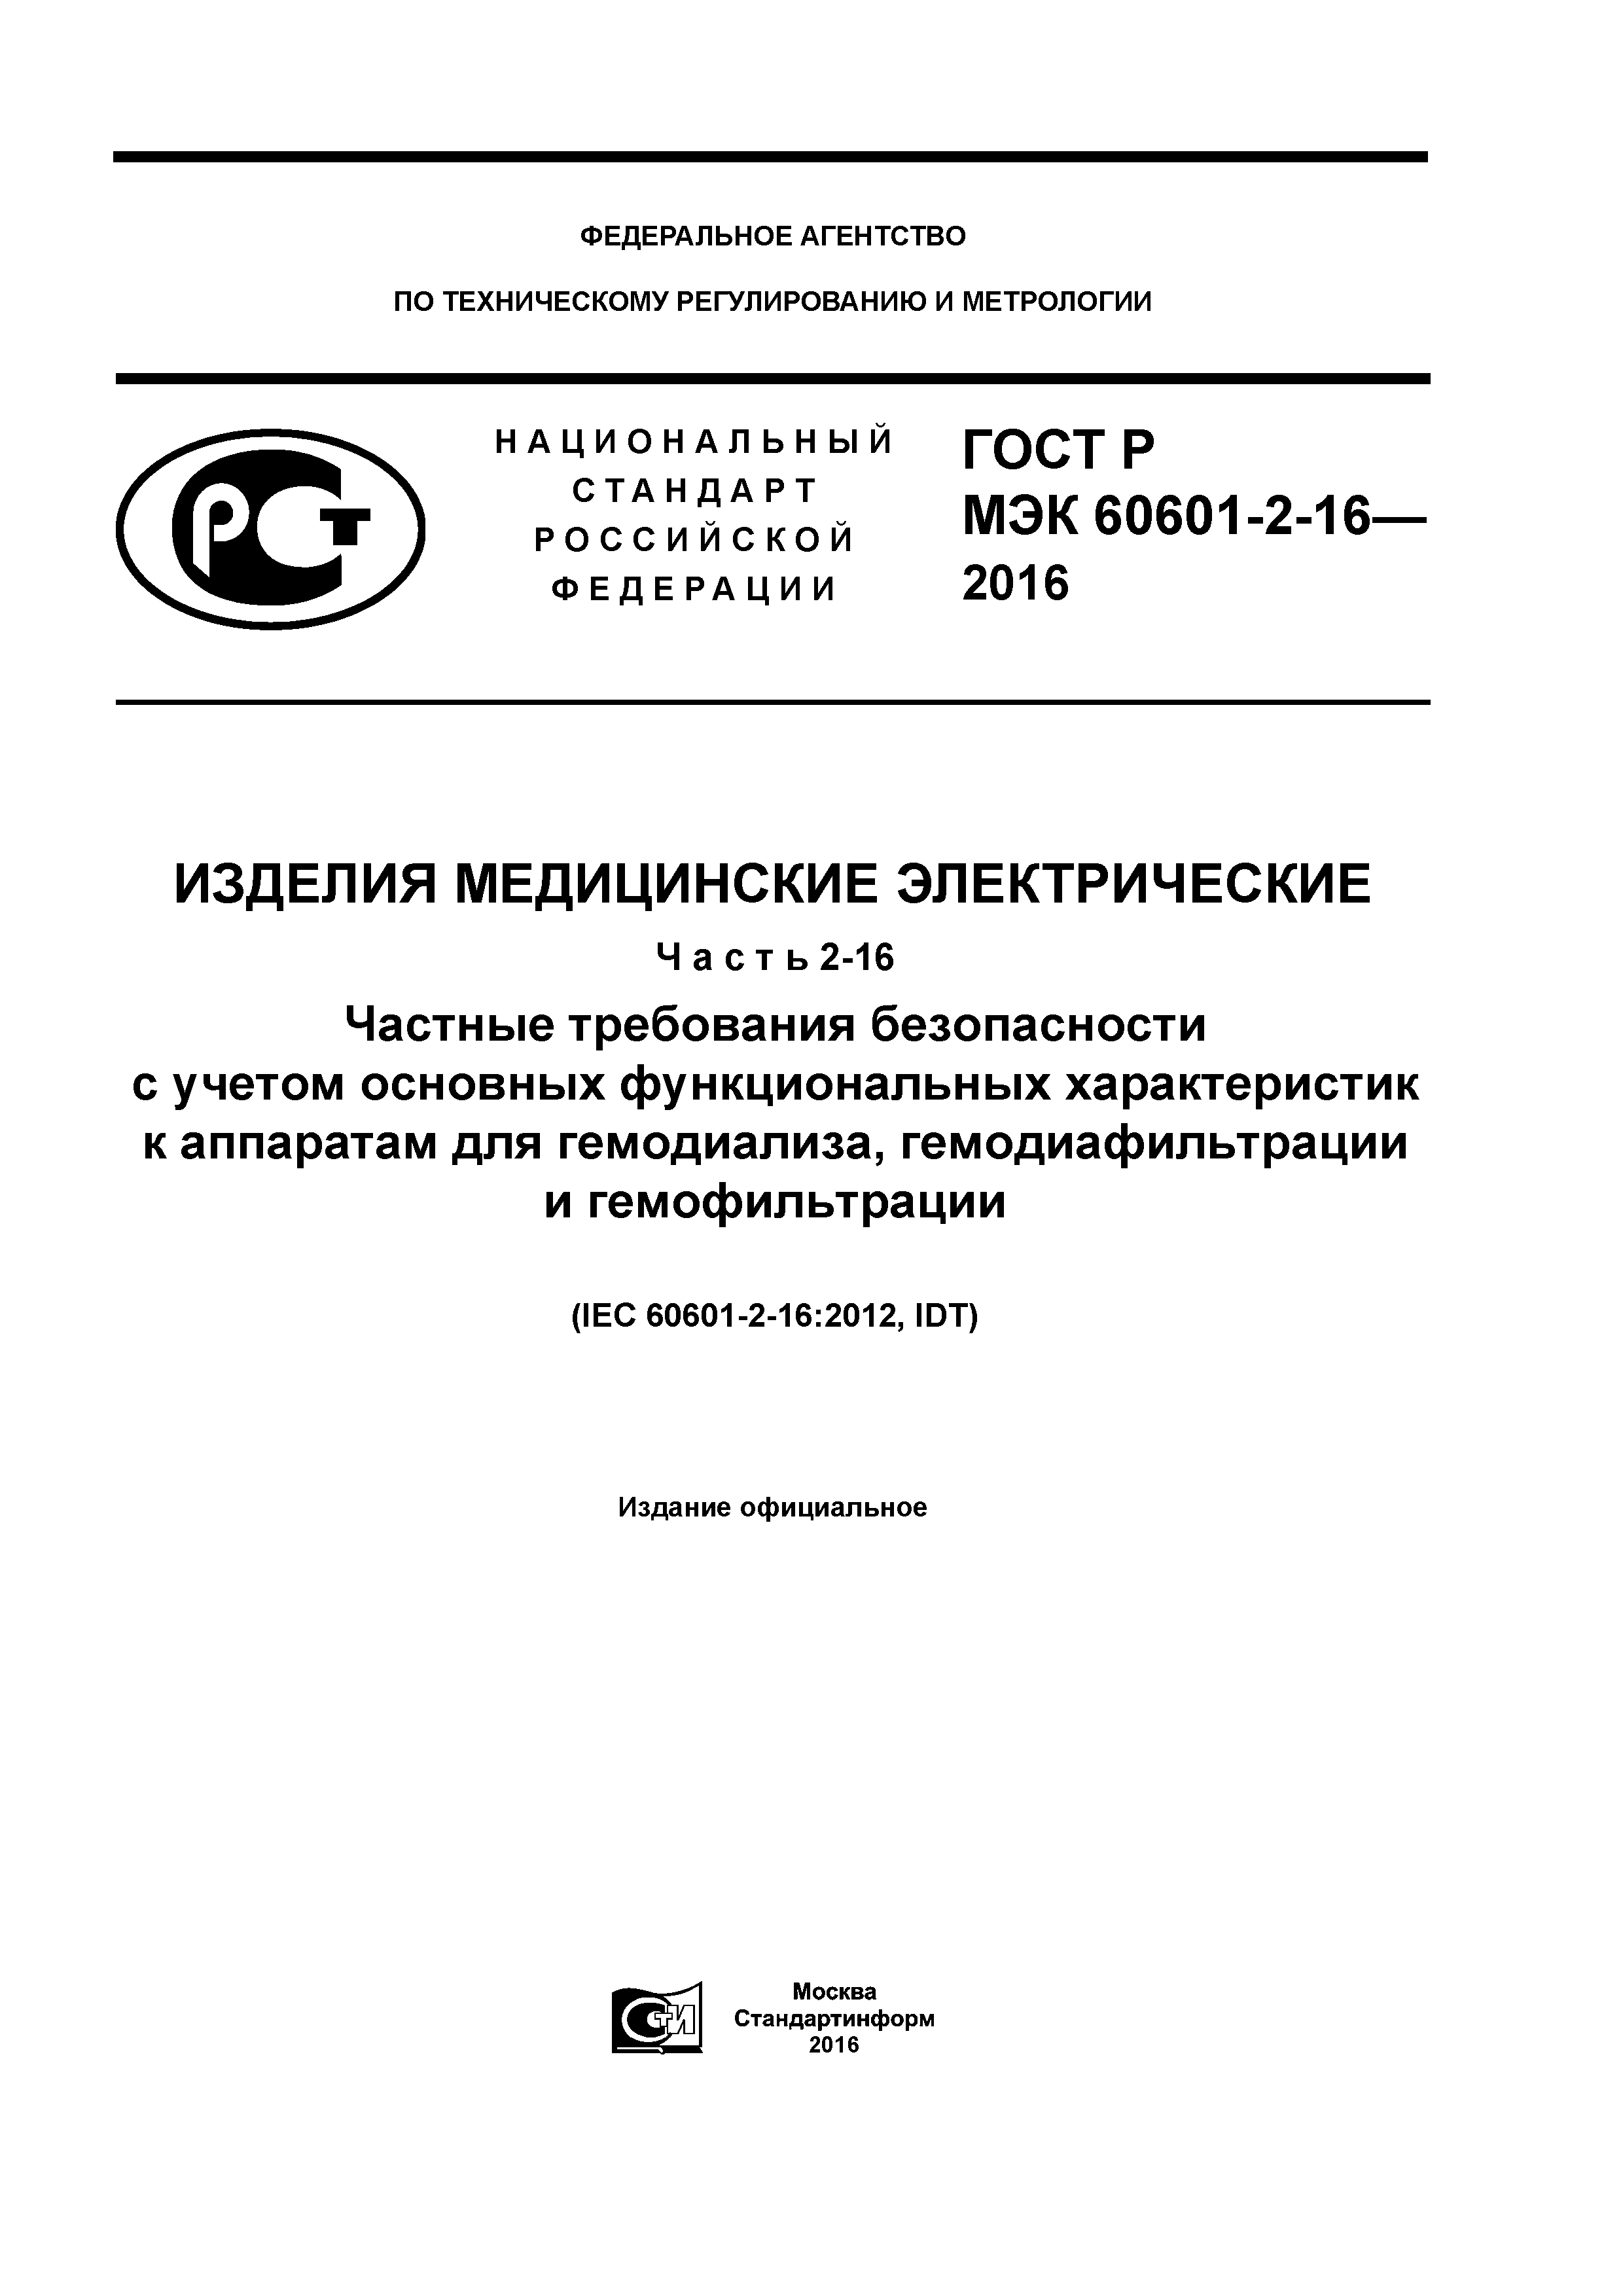 ГОСТ Р МЭК 60601-2-16-2016